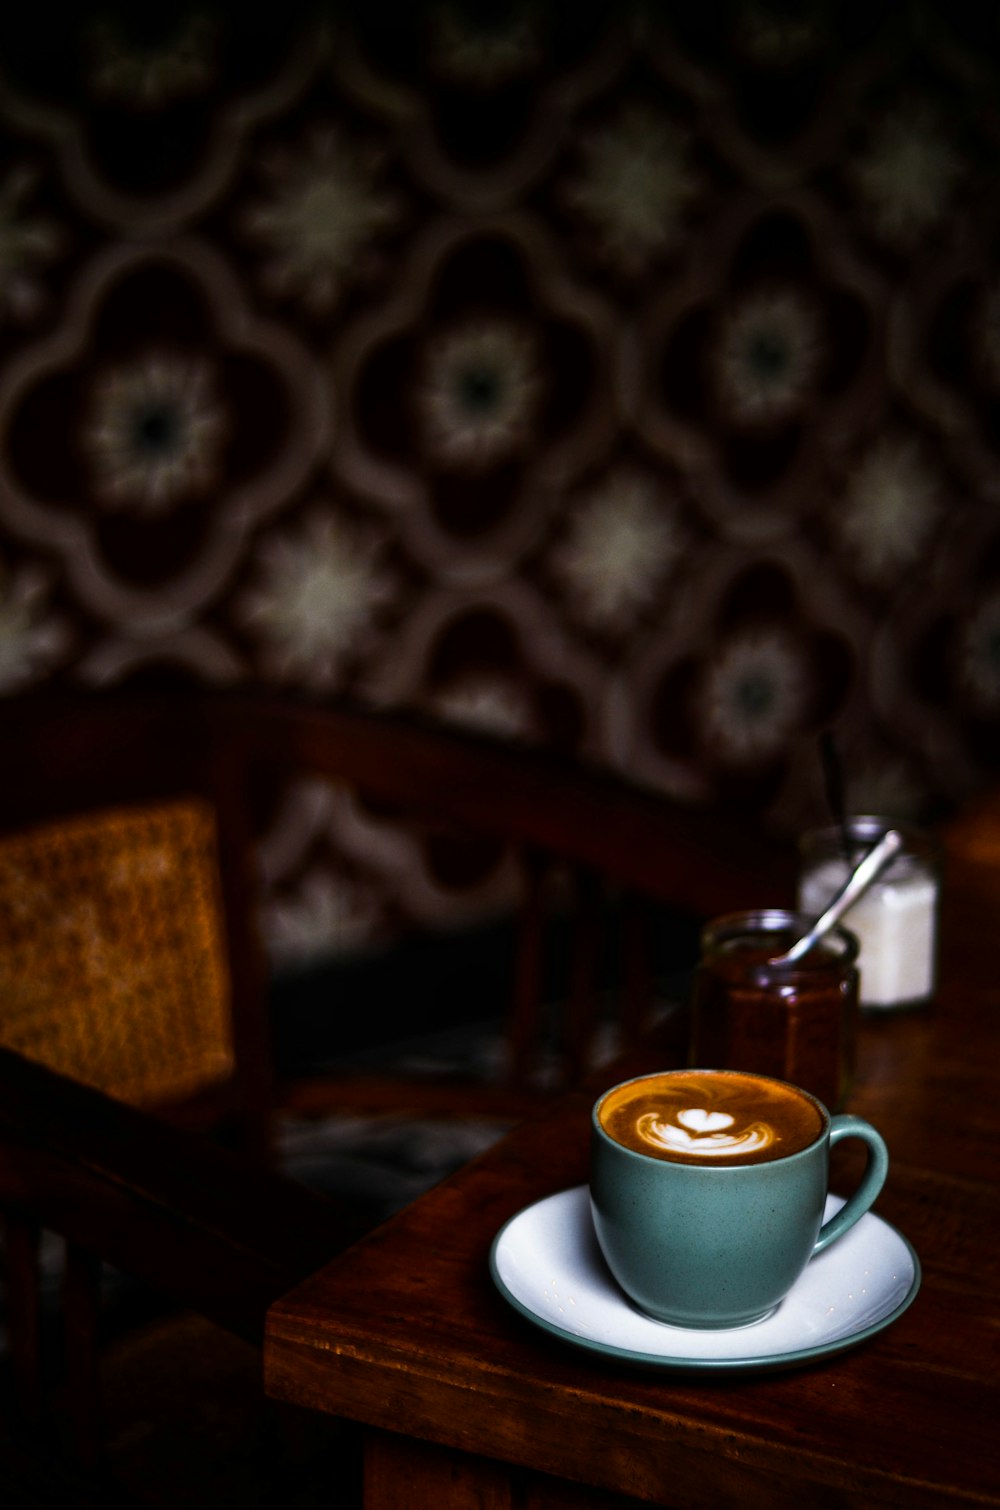 Fotografia de foco da xícara de café no molho no tampo da mesa